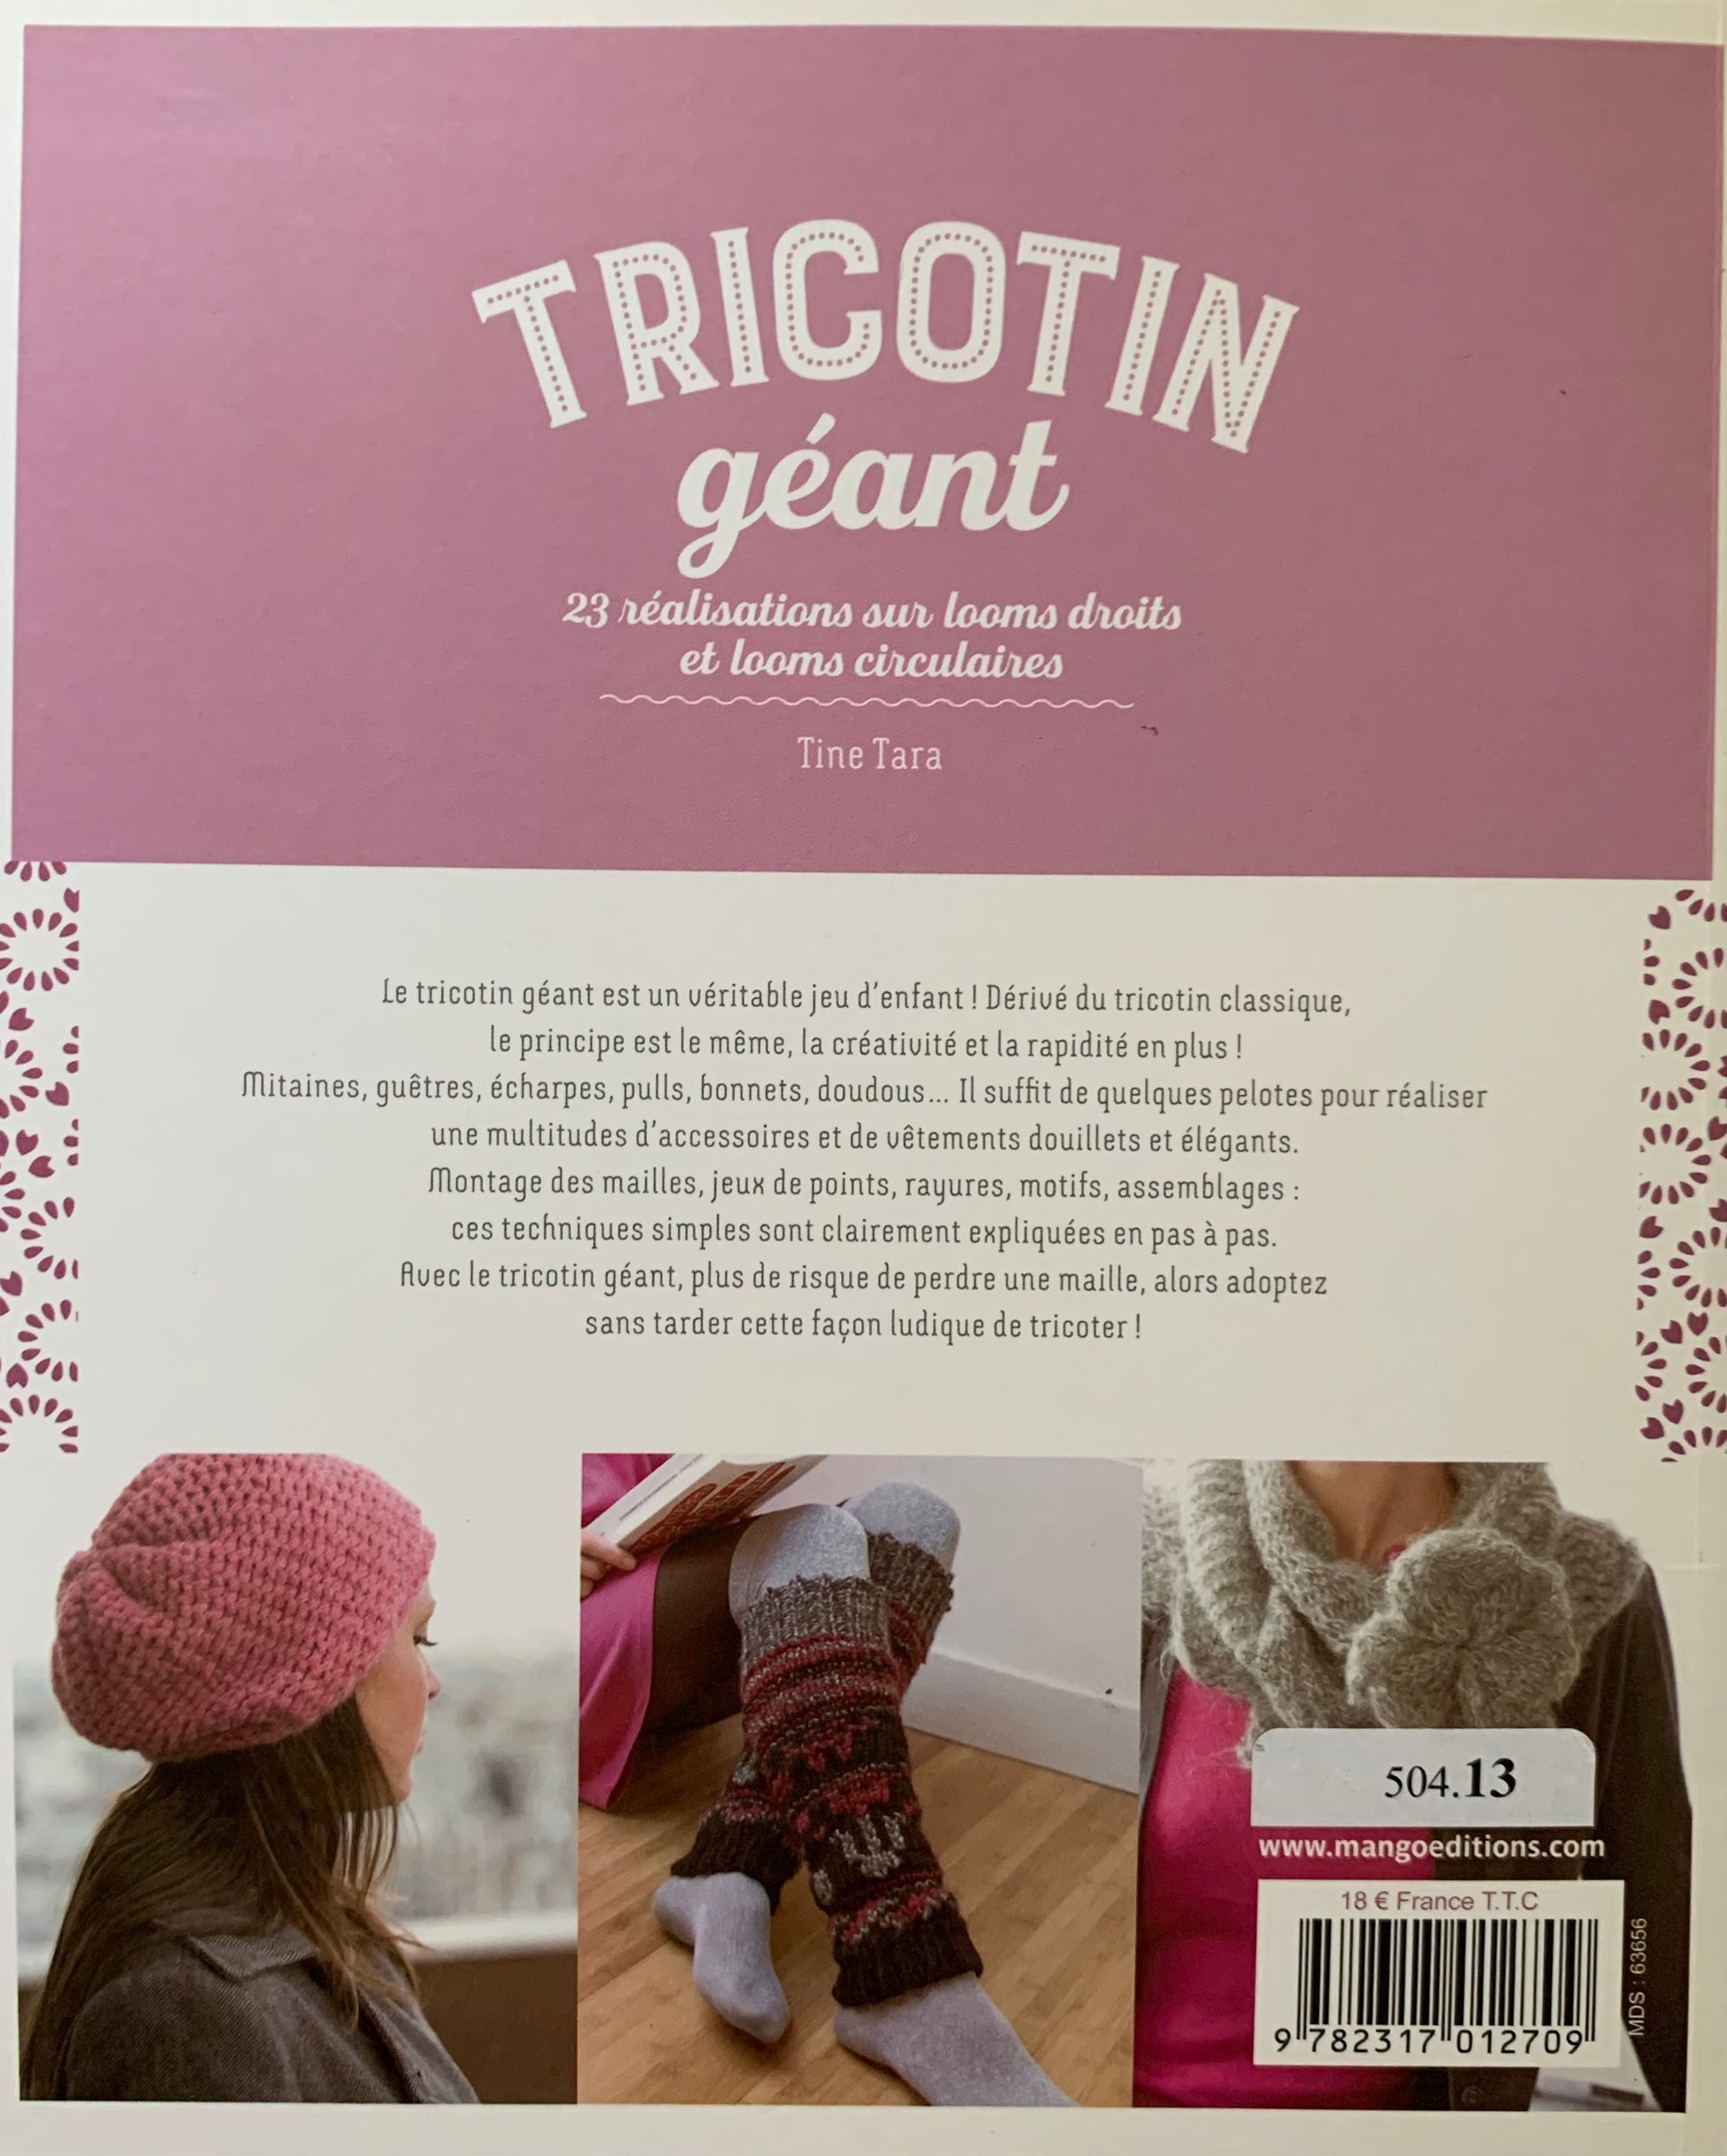 Explications - Tricotin.com